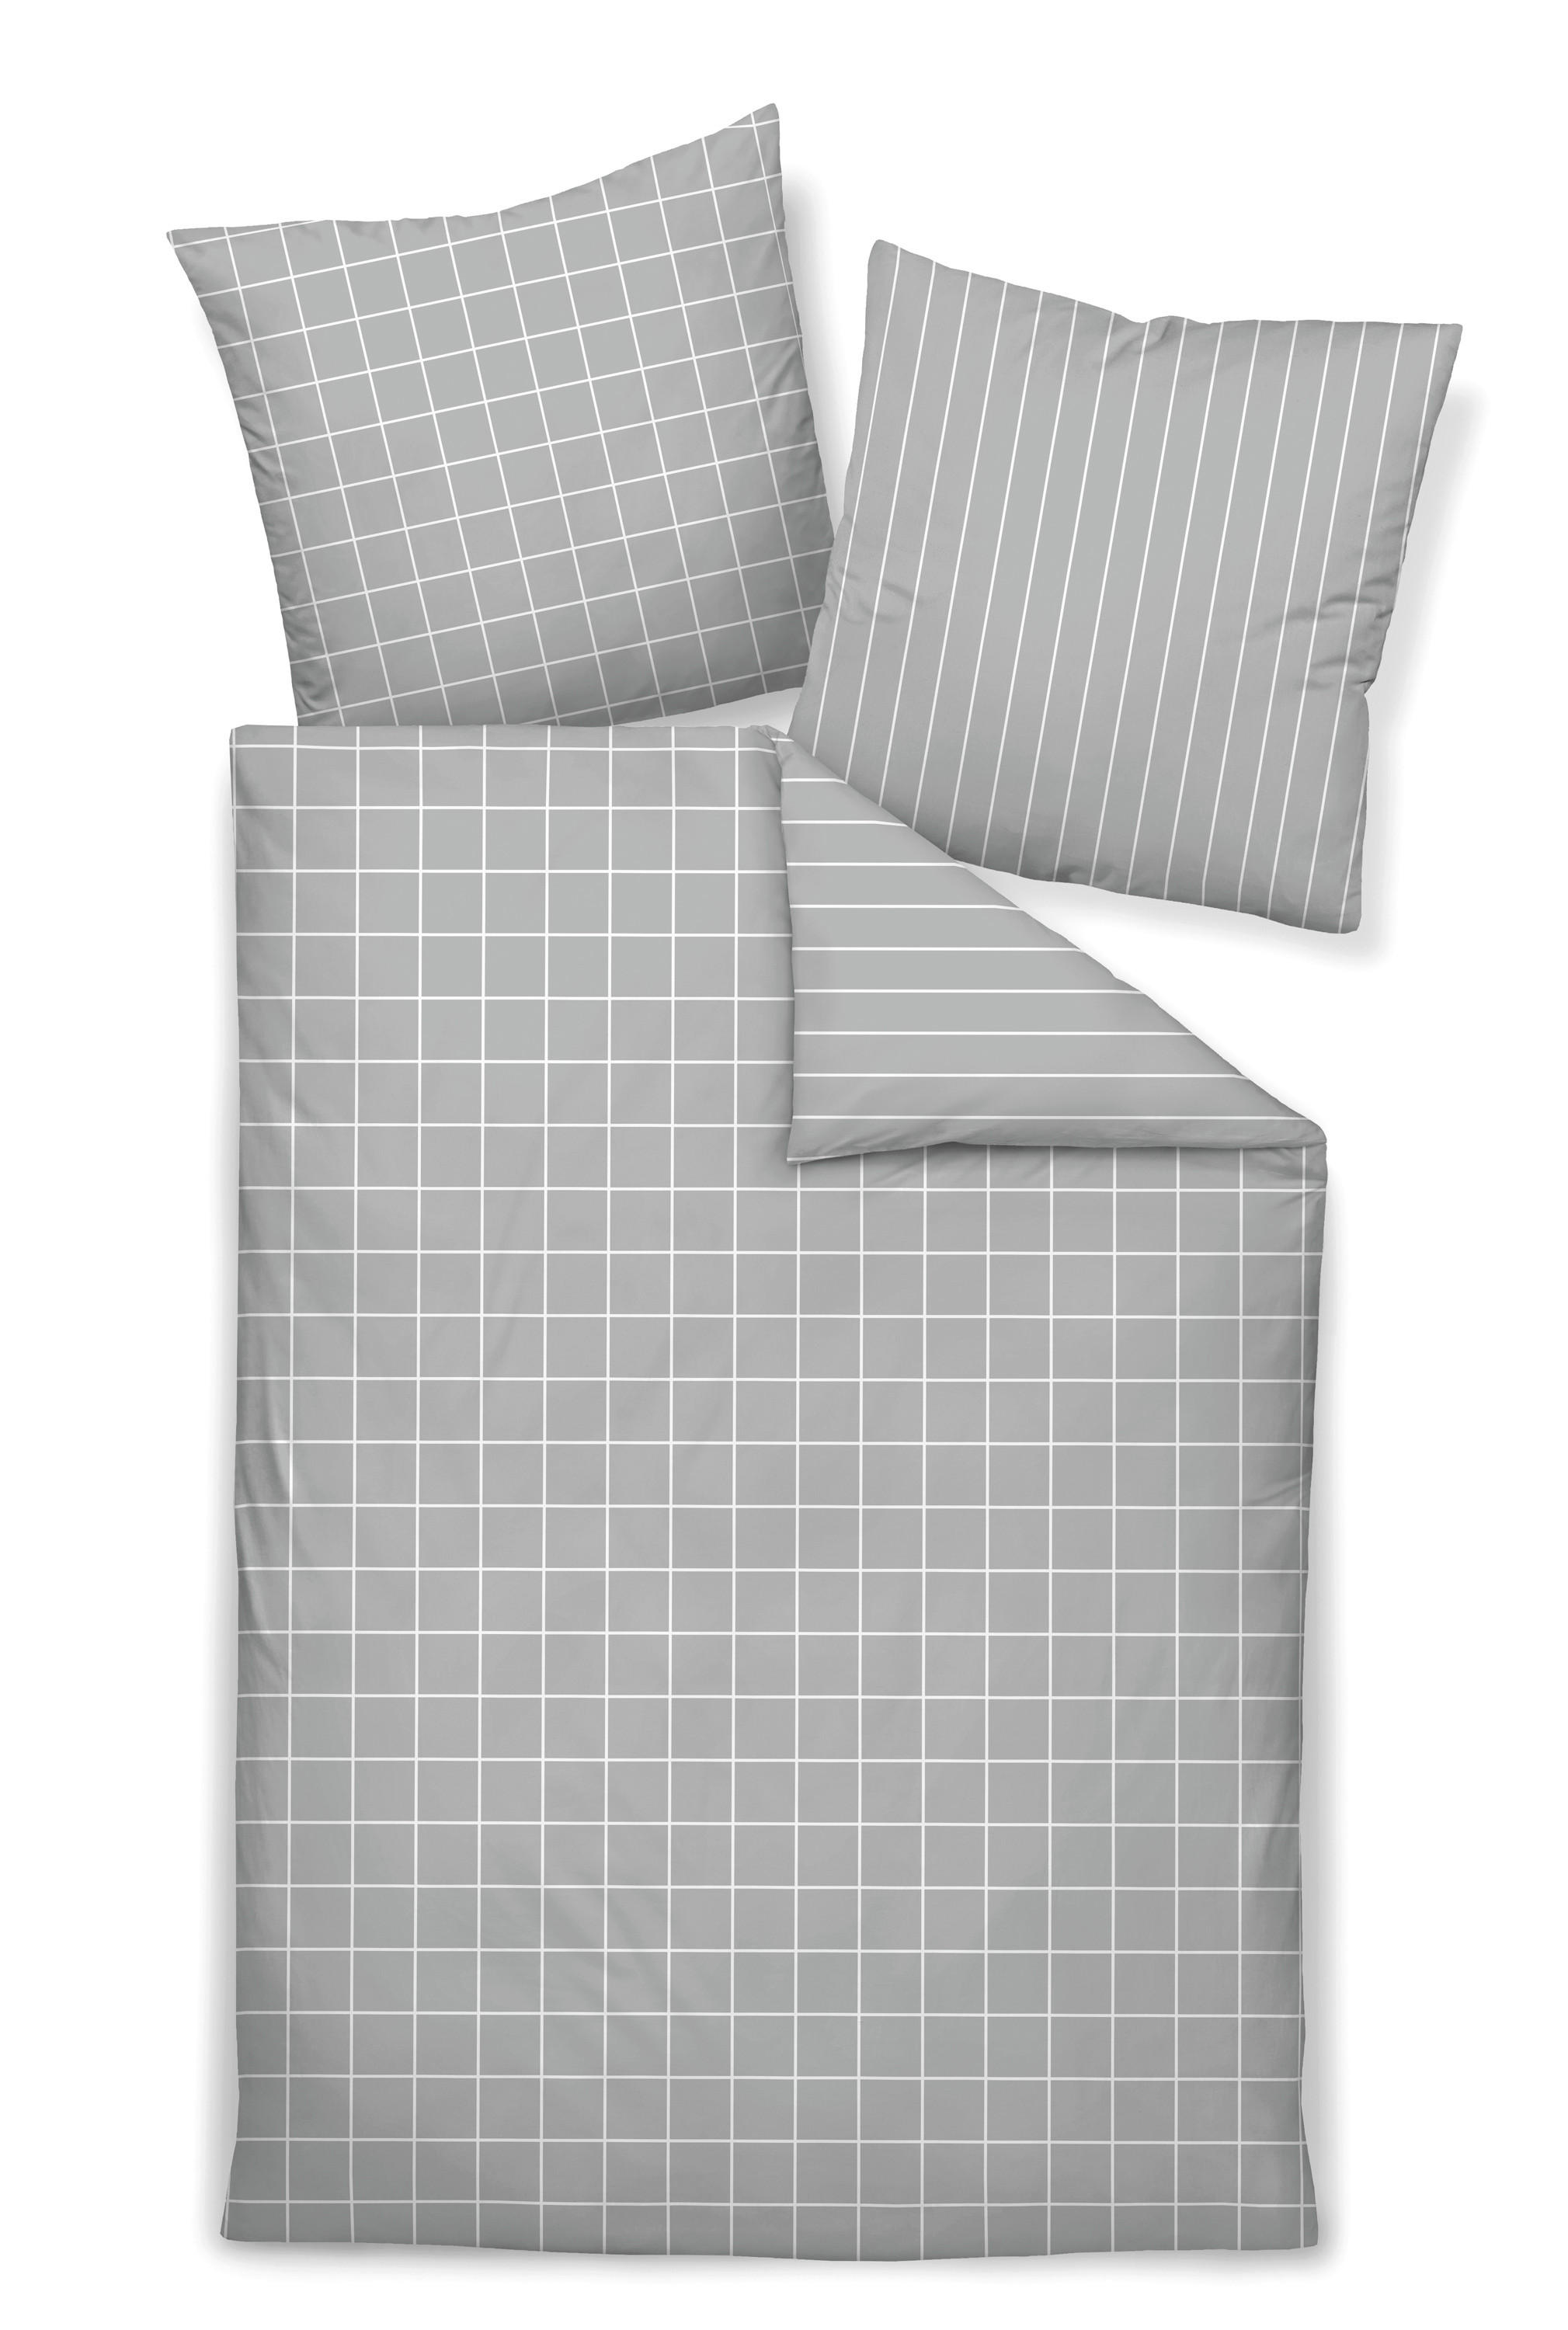 WENDEBETTWÄSCHE Giulietta Makosatin  - Weiß/Grau, Design, Textil (135/200cm) - Janine